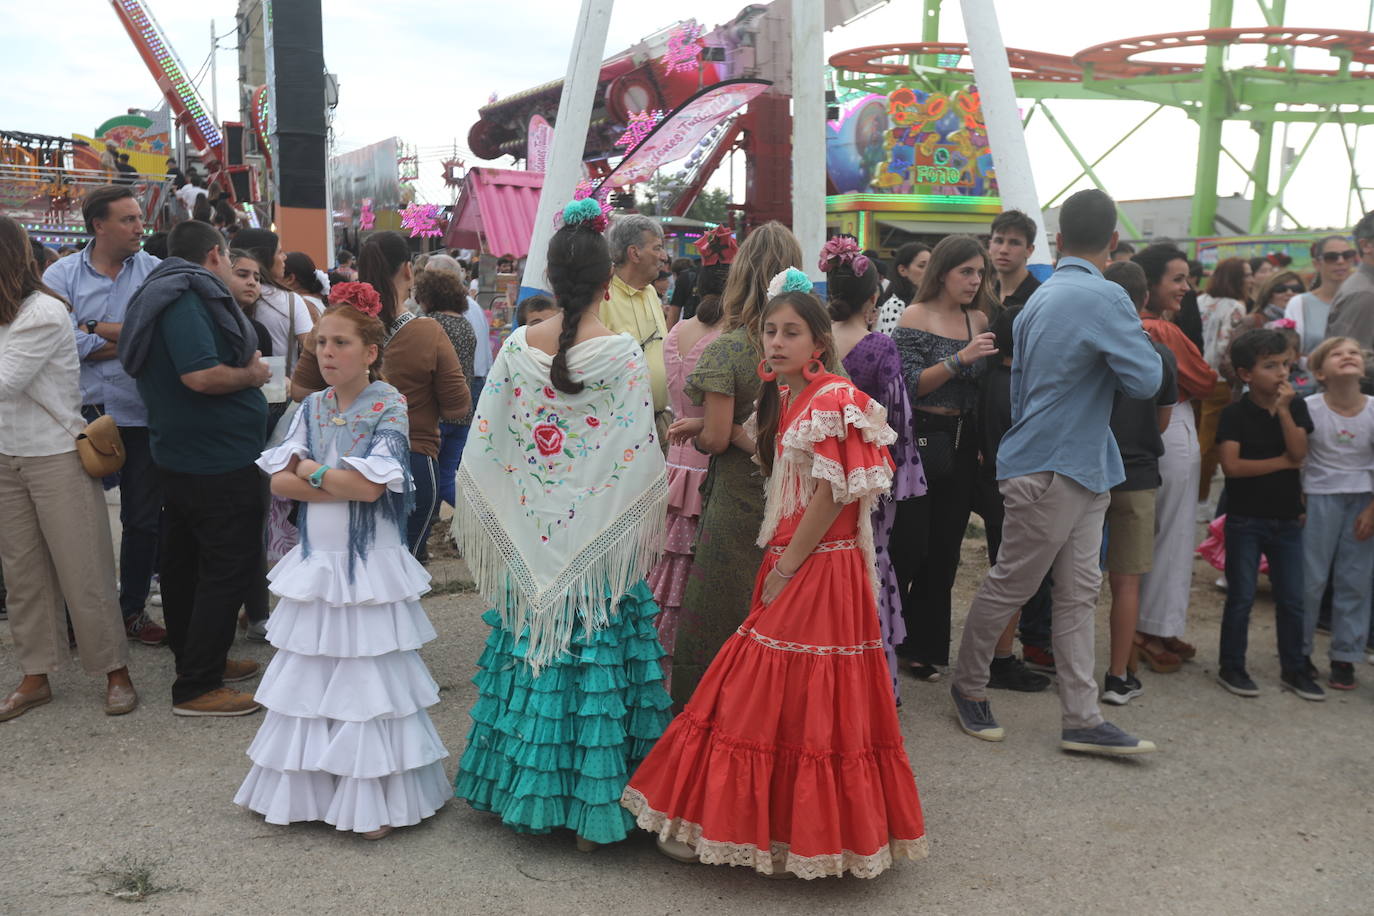 Fotos: El Puerto vive su primer día de Feria